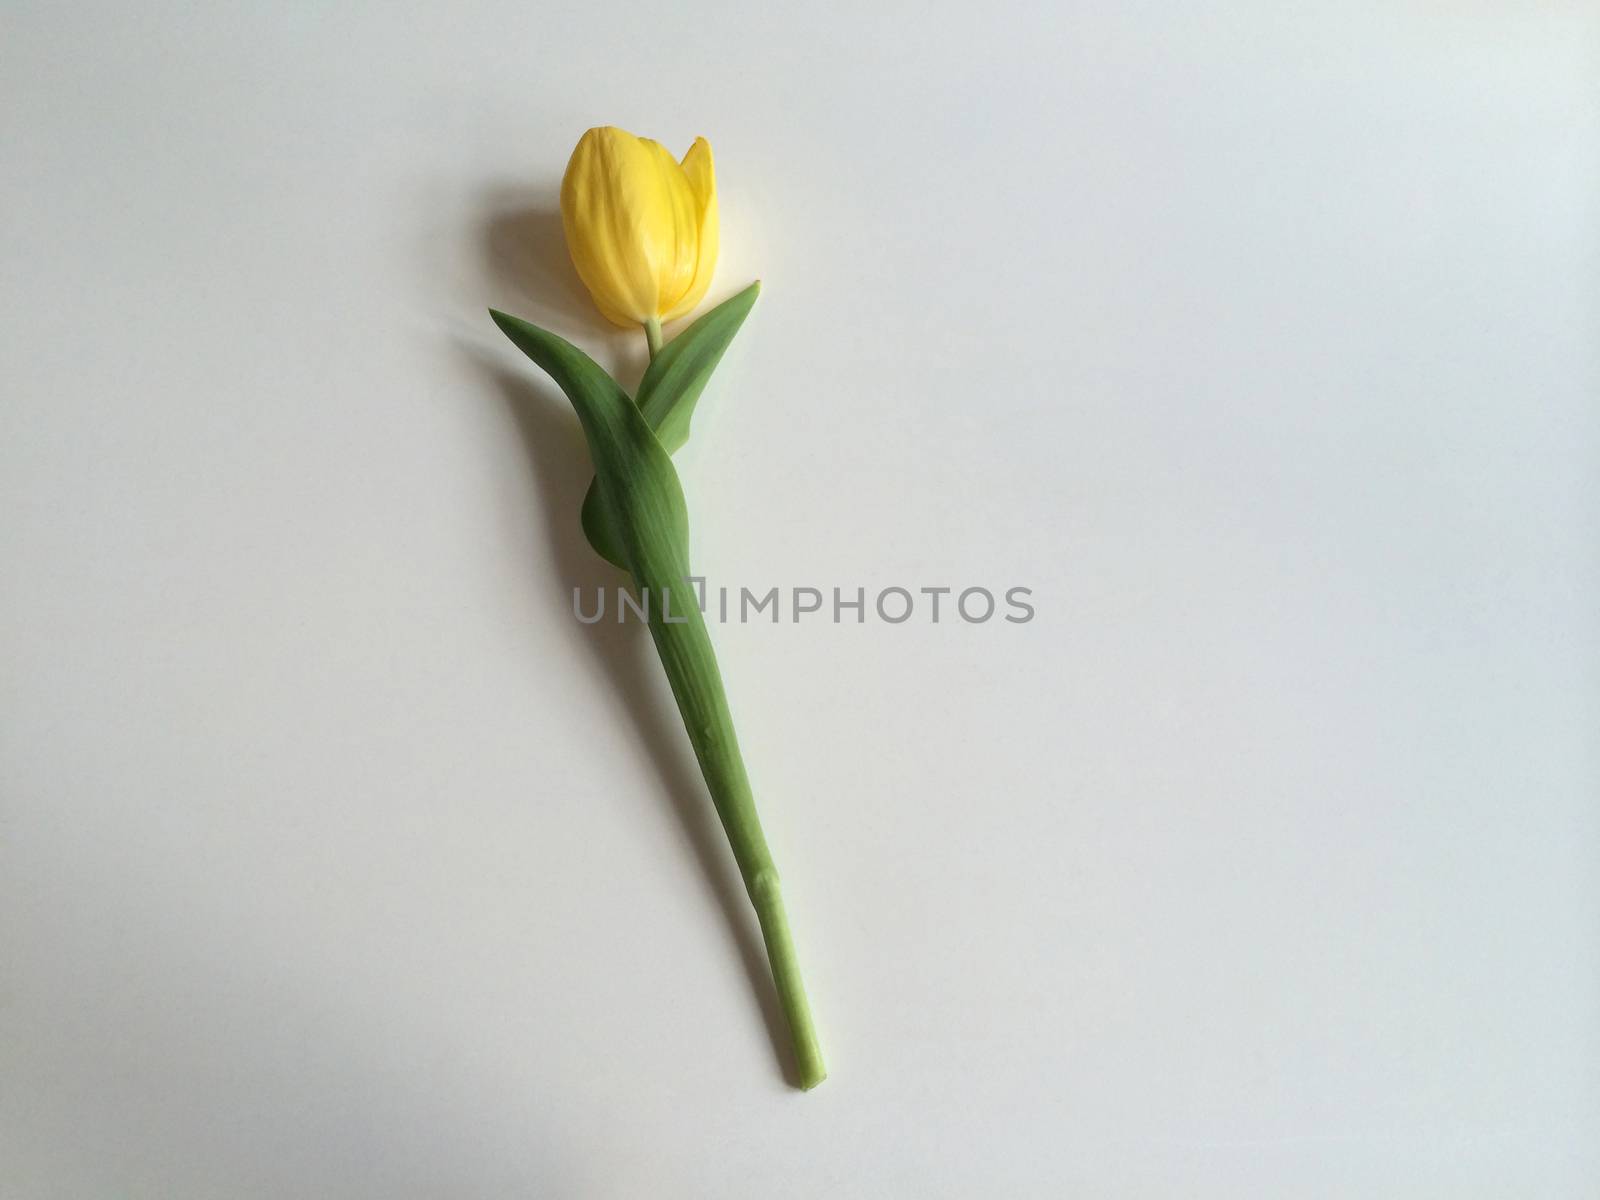 Single yellow tulip on white
